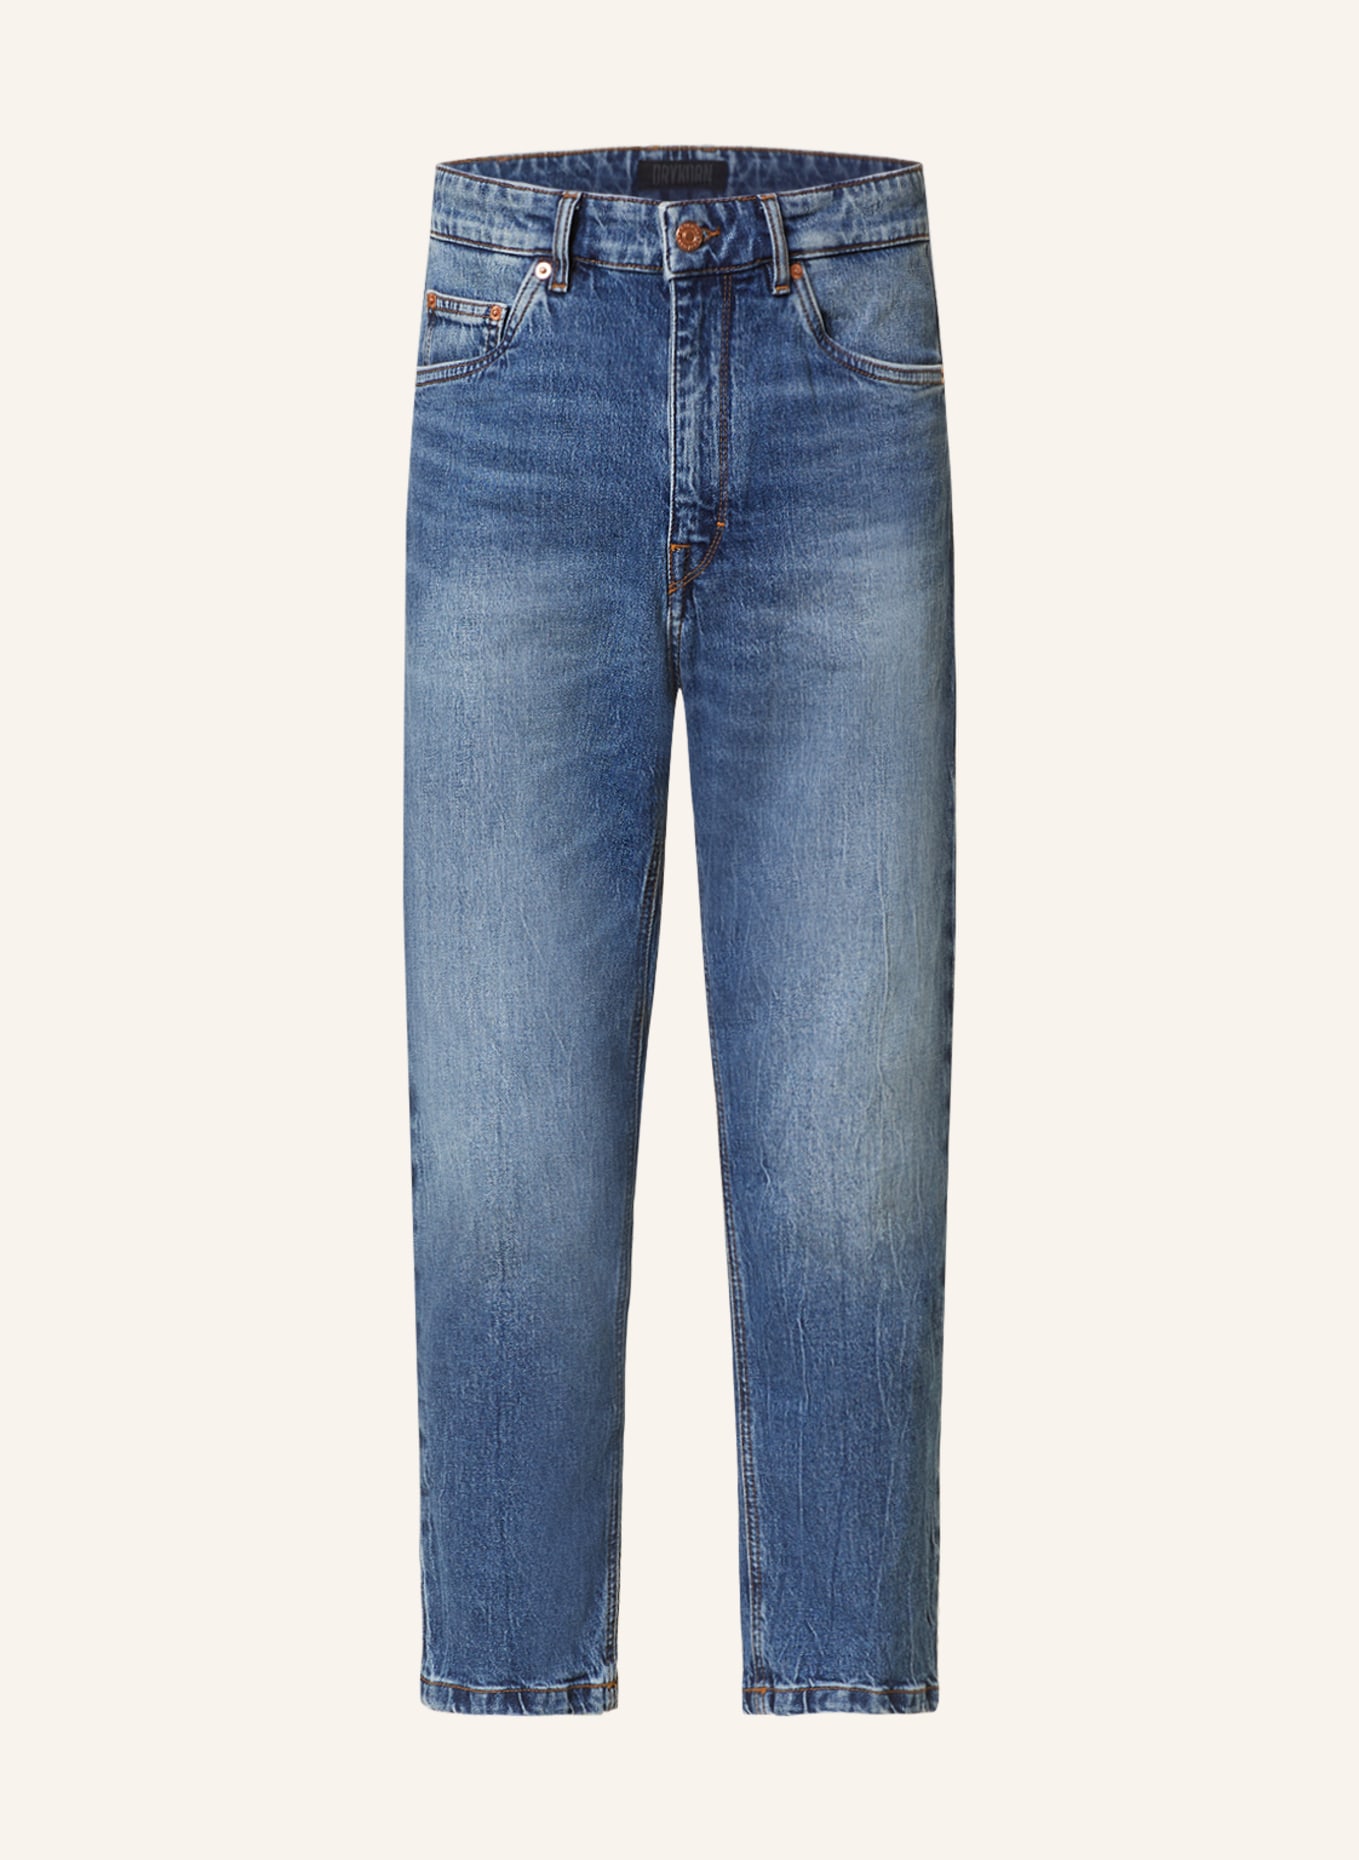 REPLAY Jeans WILLBI Slim Fit, Farbe: 009 MEDIUM BLUE (Bild 1)